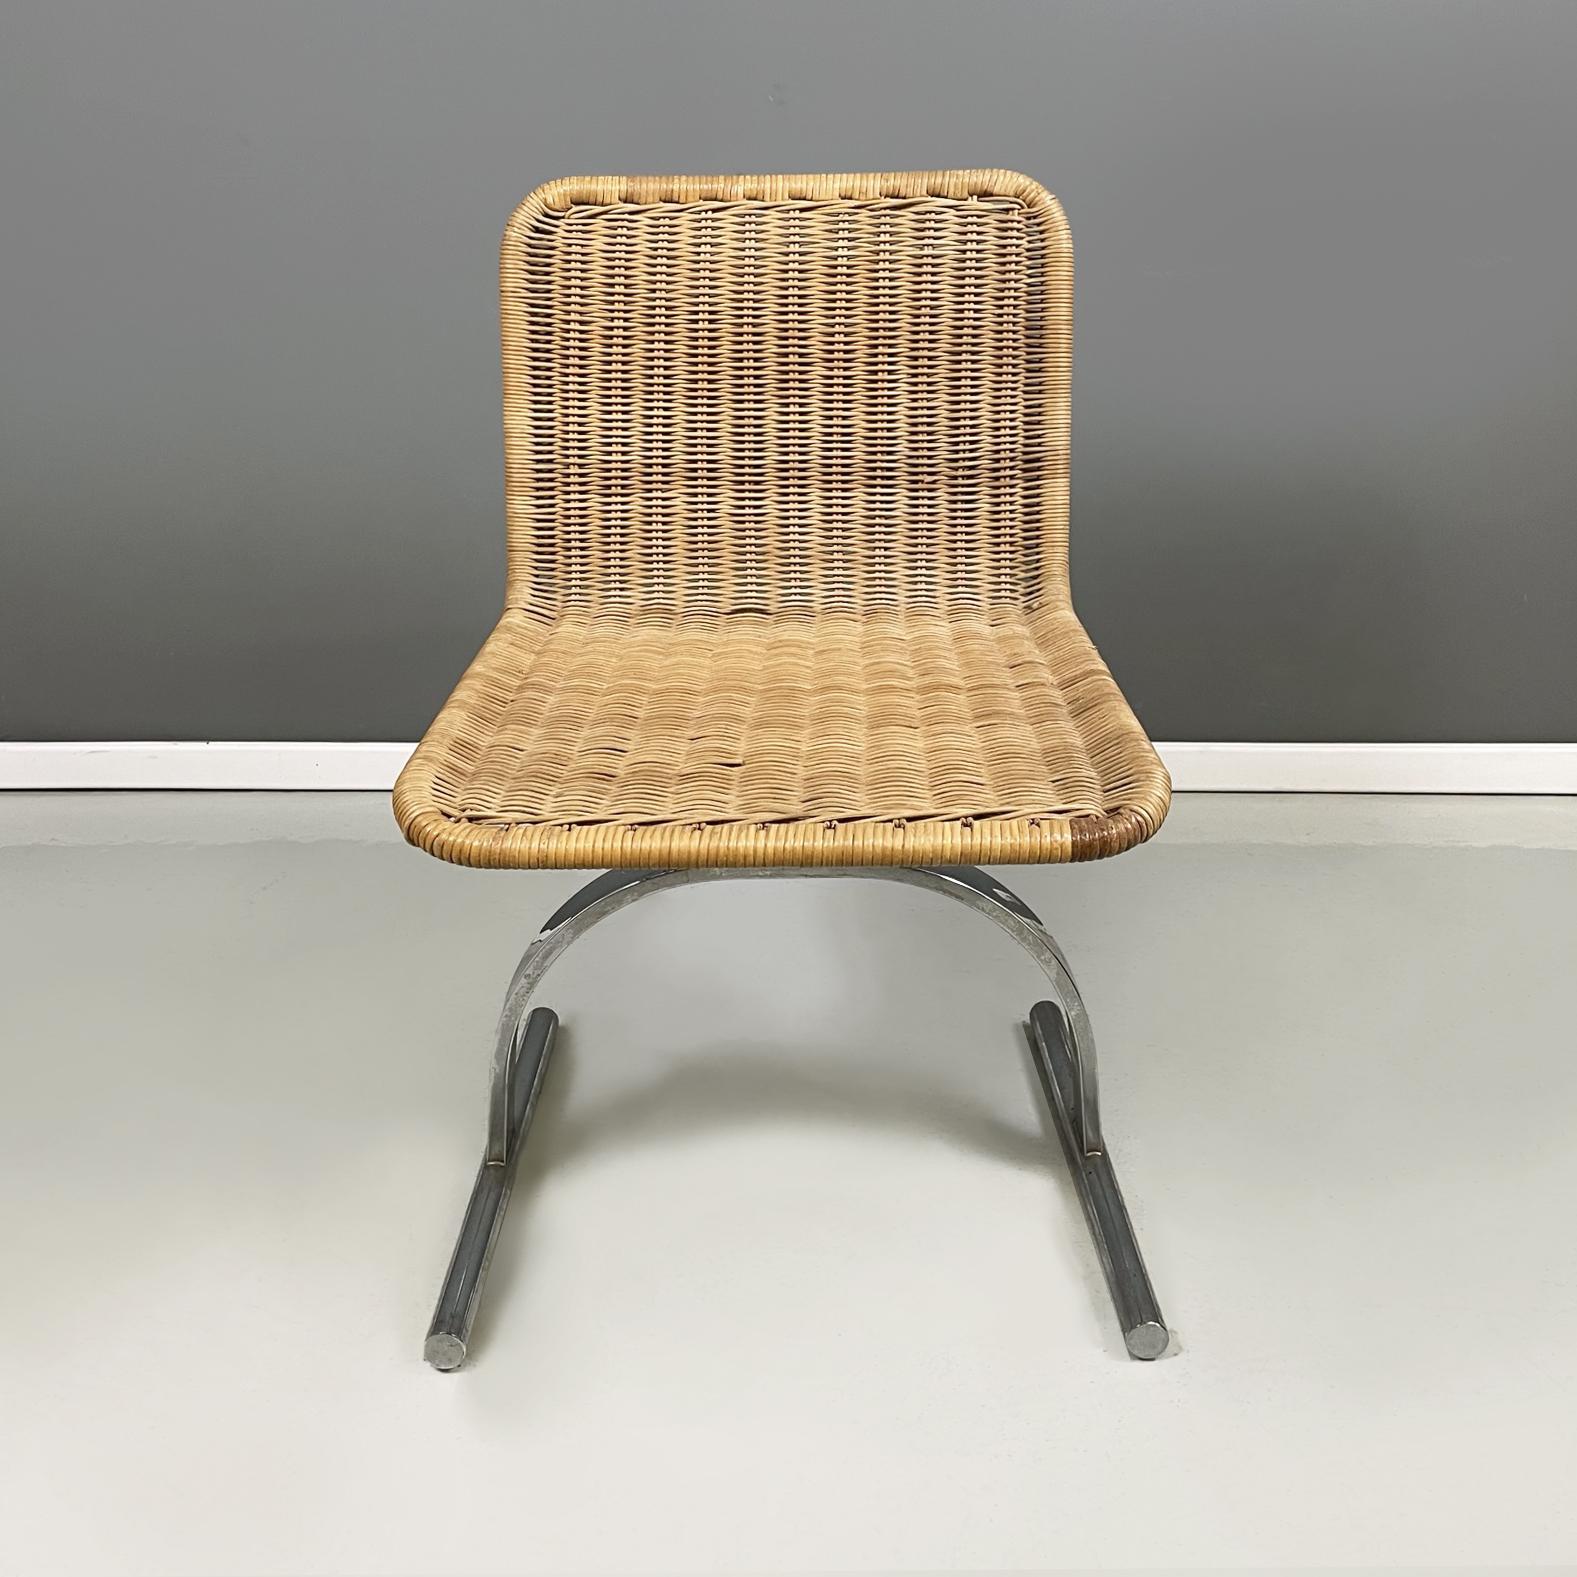 Chaises modernes italiennes en paille et acier, 1970
Lot de 5 chaises avec assise et dossier aux angles arrondis en paille finement tressée. La structure en acier est composée de deux demi-cercles, dont l'un se termine par deux pieds